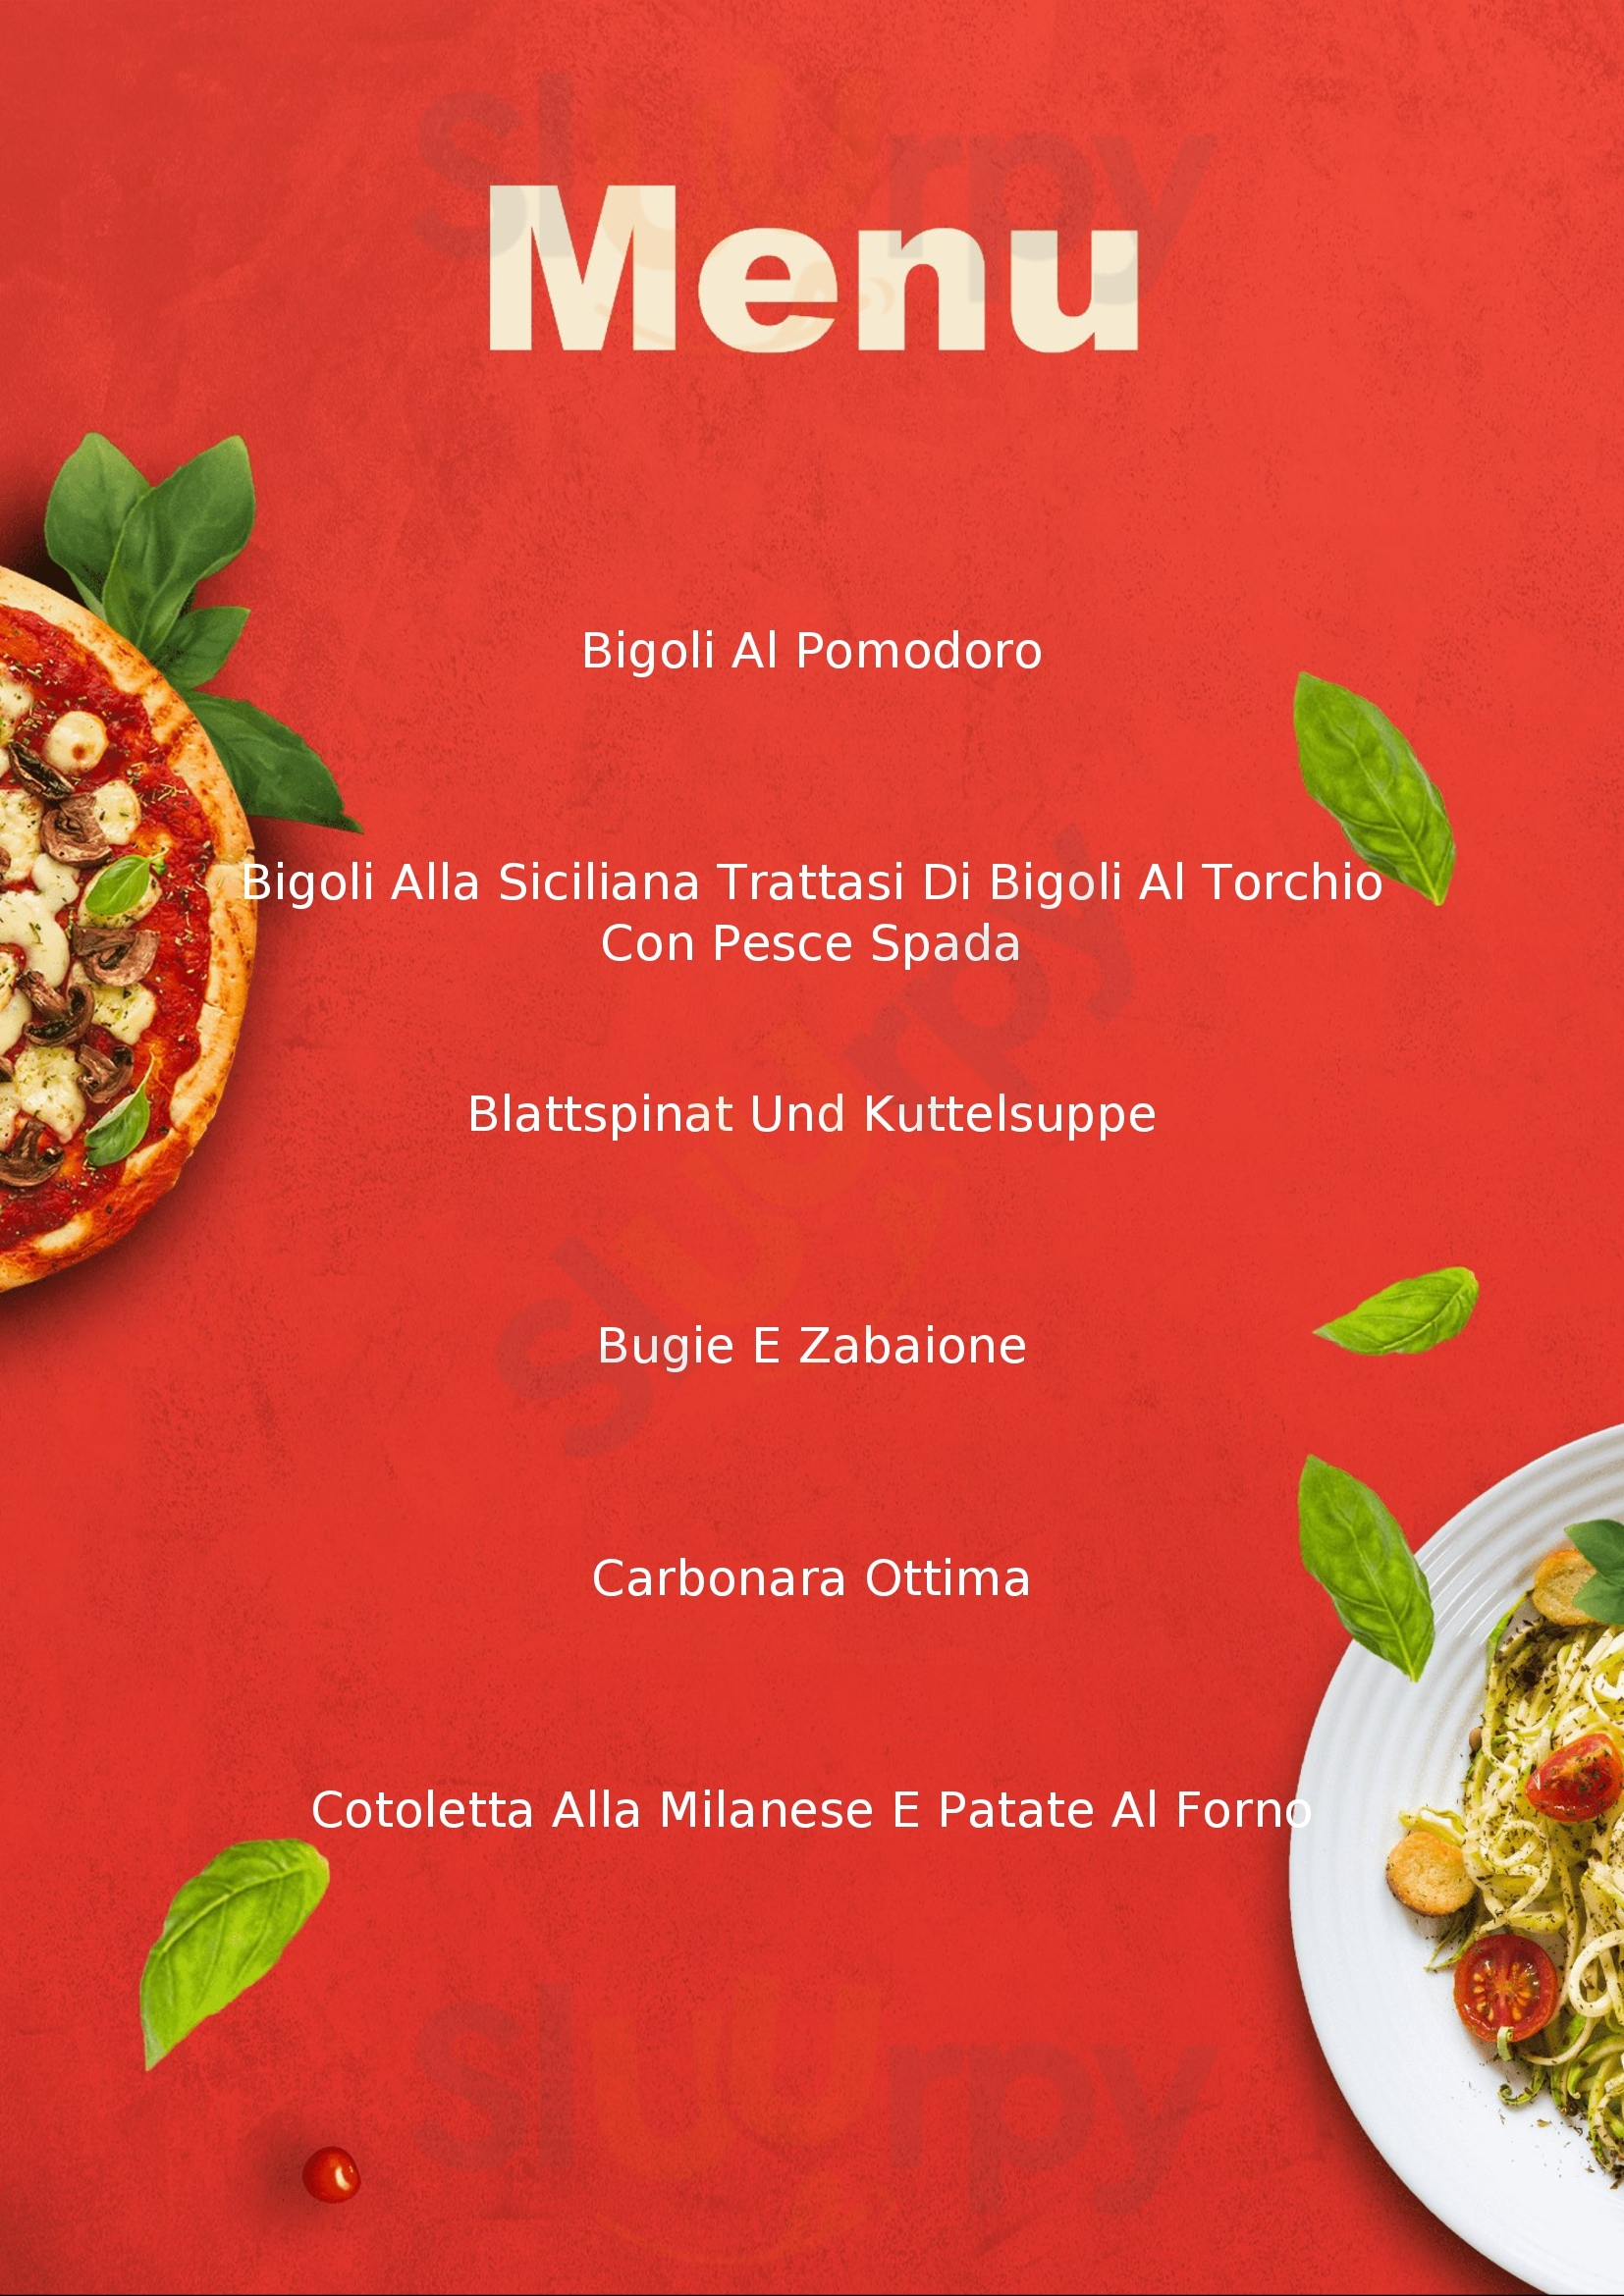 Gastronomia Nosari Romano Mantova menù 1 pagina